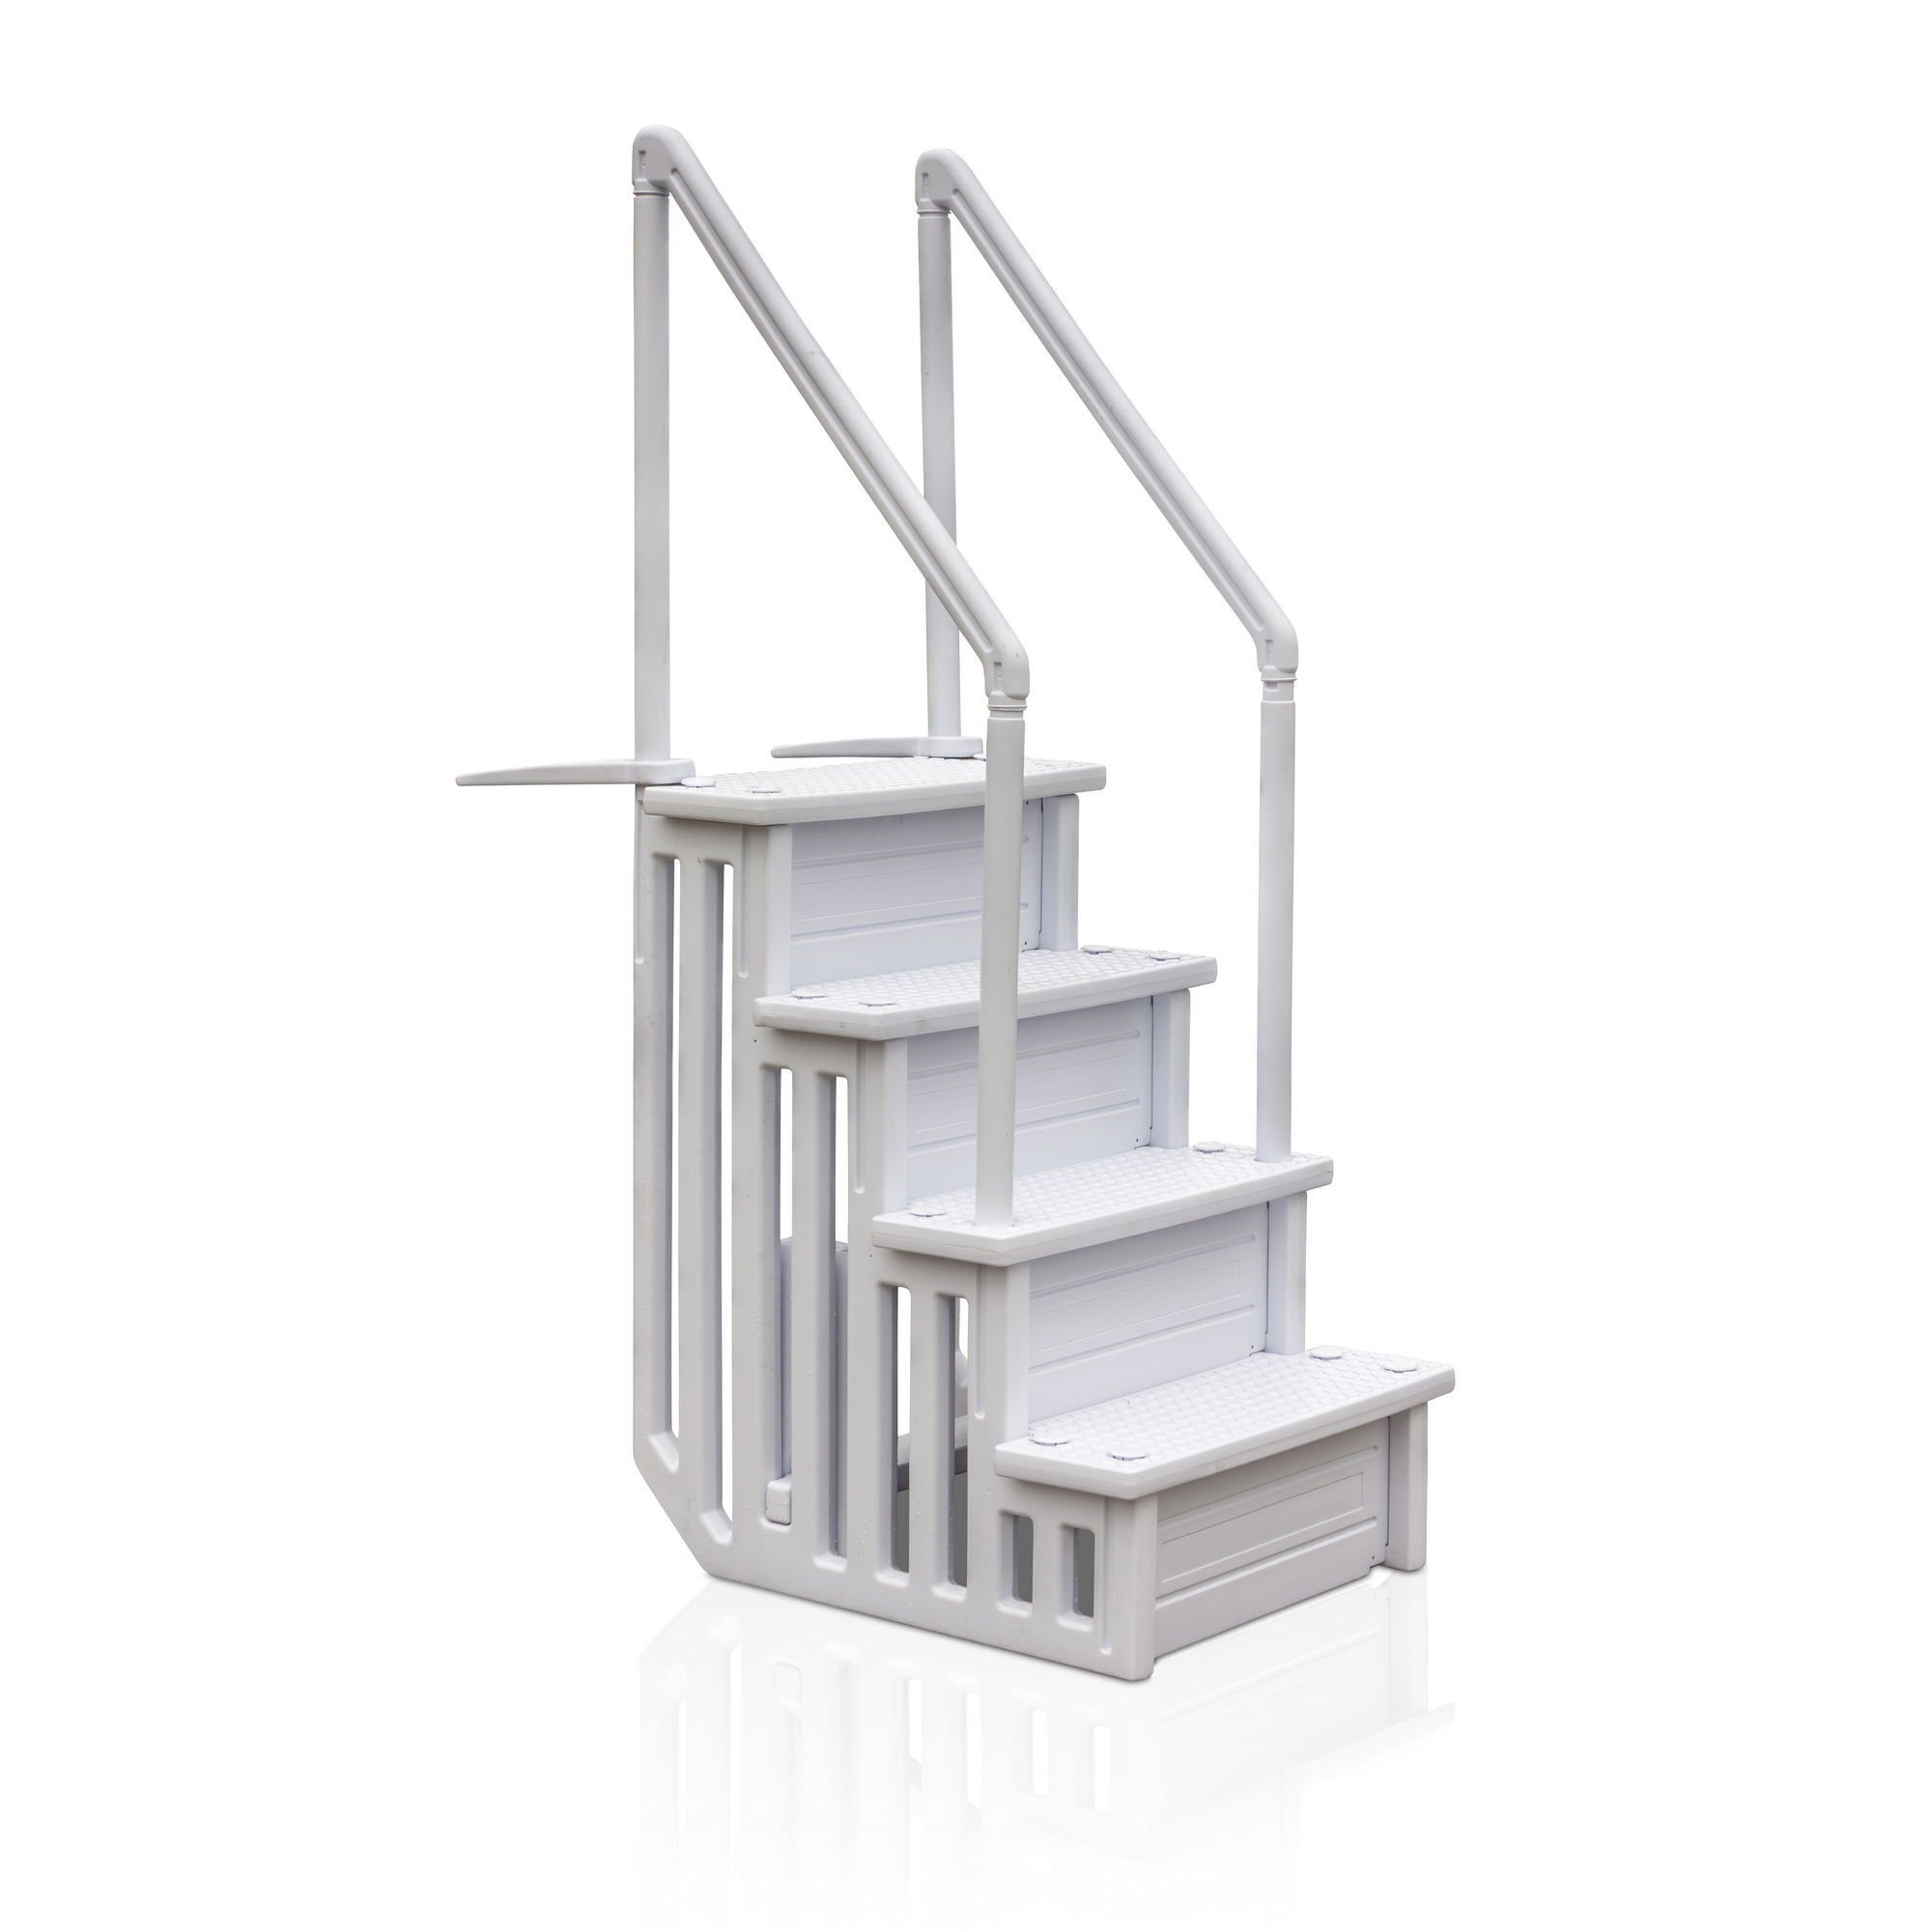 Pool-Leiter 4-stufig 80 x 92 x 206 cm für Einbaubecken + product picture